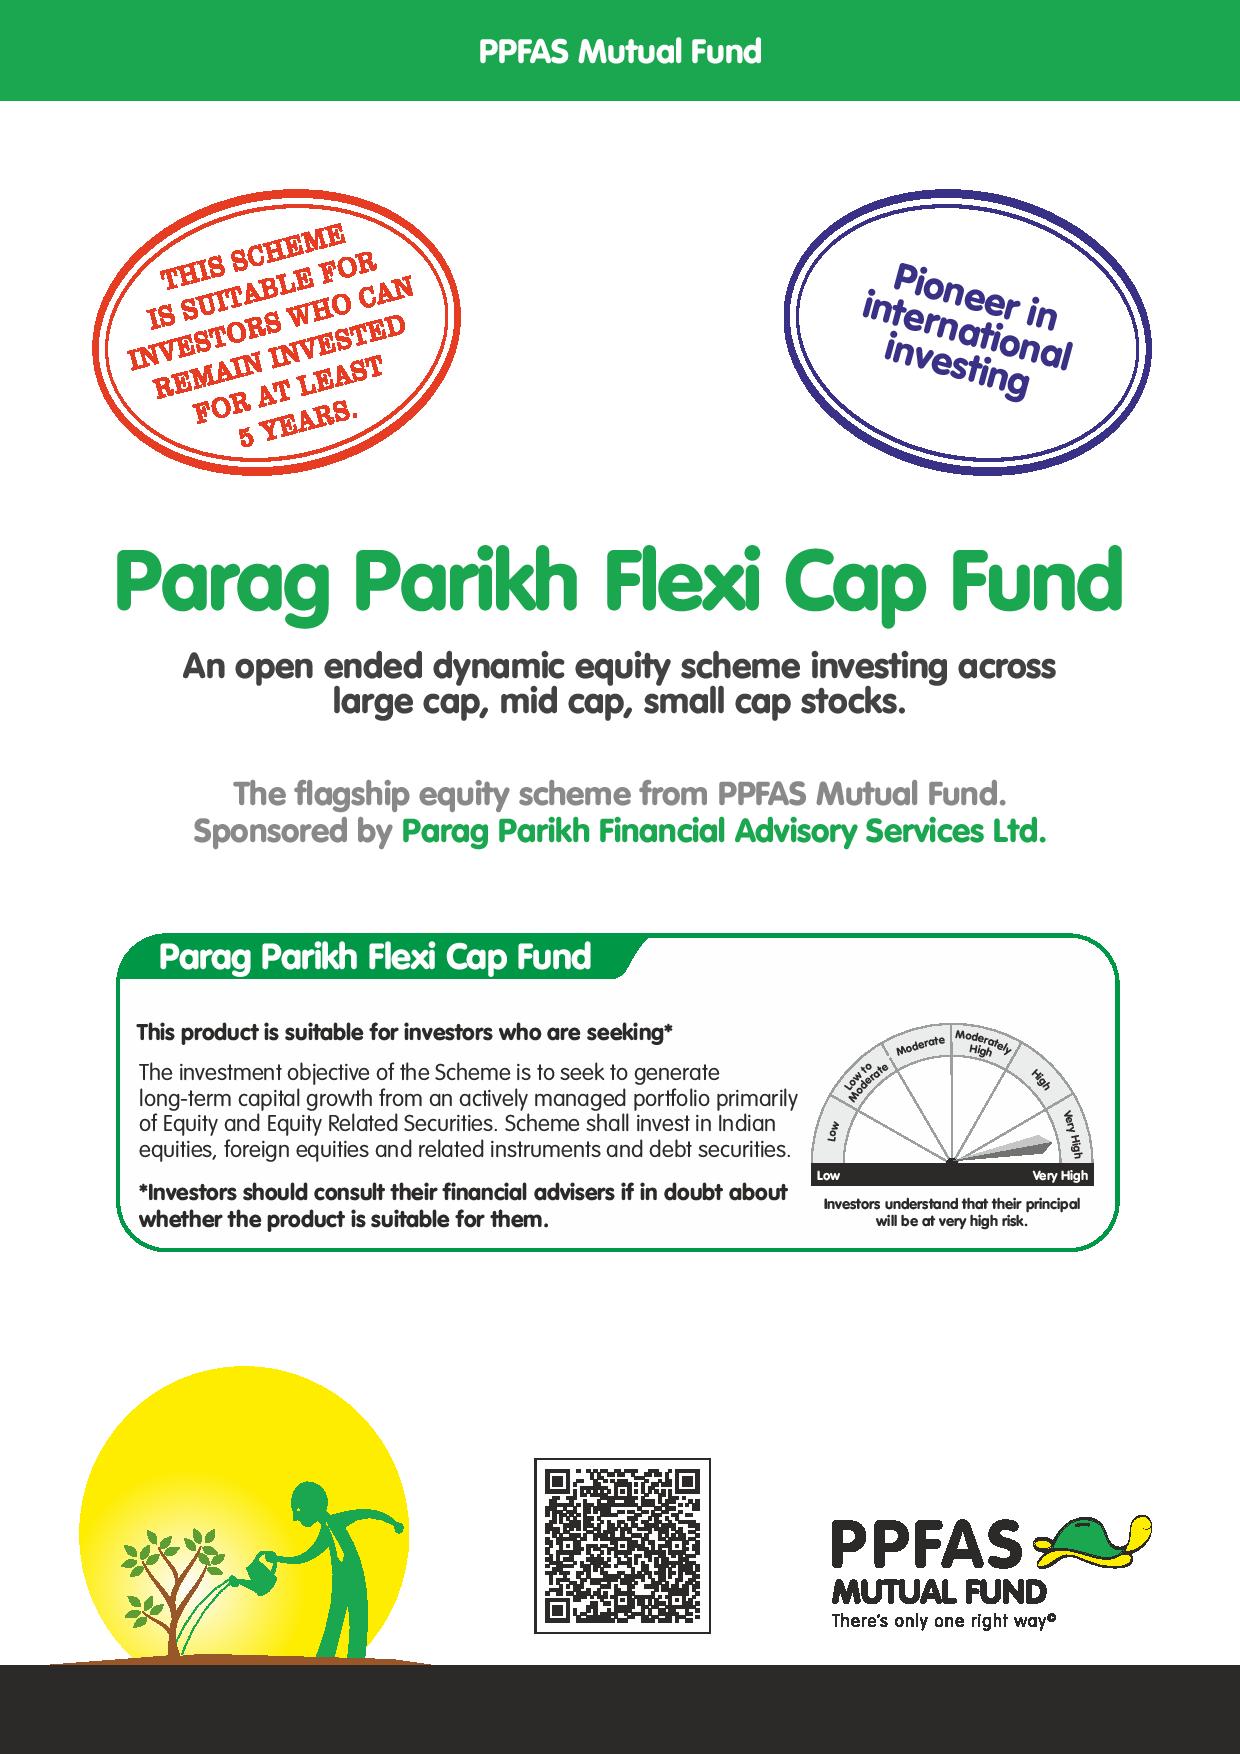 ফাণ্ডৰ সবিশেষ ।। Fund Details ।। পৰাগ পাৰিখ ফ্লেক্সি কেপ ফাণ্ড - ৰেগুলাৰ প্লেন - গ্ৰুথ ।। Parag Parikh Flexi Cap Fund - Regular Plan - Growth । Mutual Funds in Assamese । মাধৱ ডিজিটেল - MADHAB DIGITAL